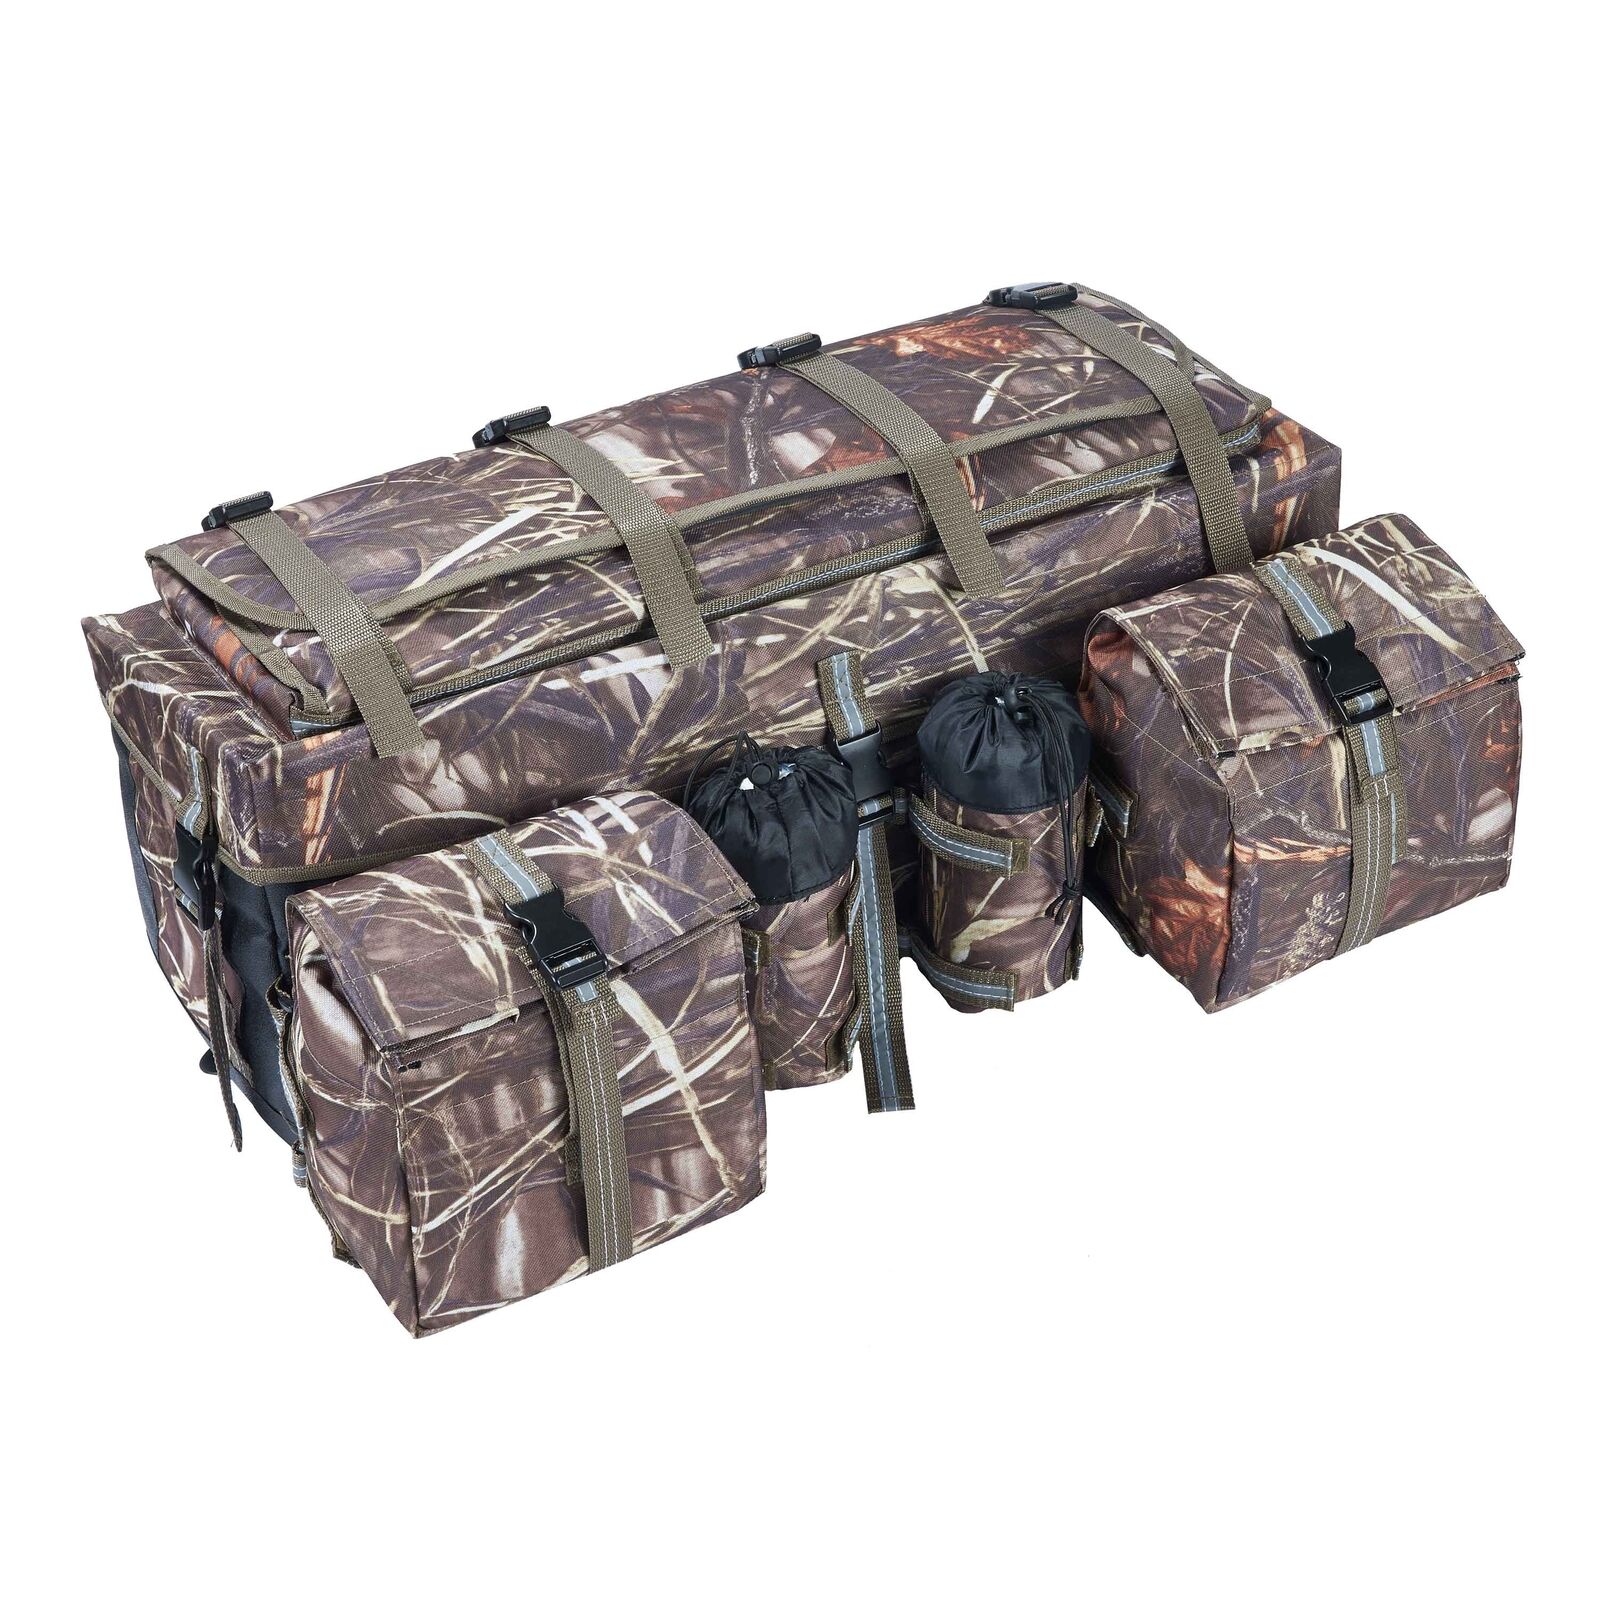 ATV Cargo Bag Rear Rack Gear Bag Waterproof with Topside Bungee Tie-Down Storage